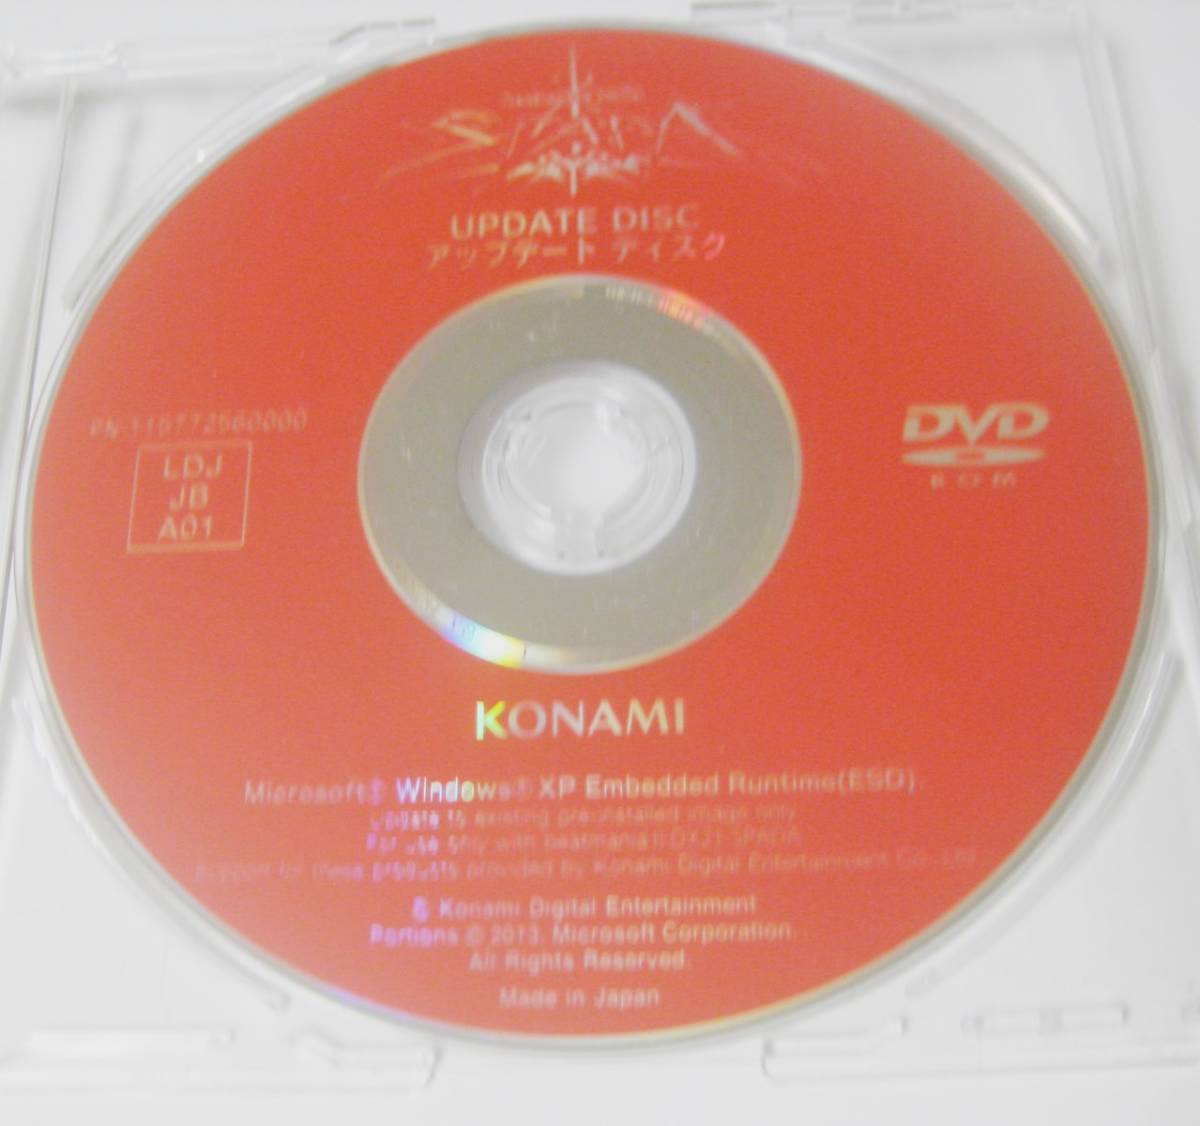 konami コナミ beatmania IIDX 21 SPADA DVD-ROM アップデートディスク LDJ JB A01